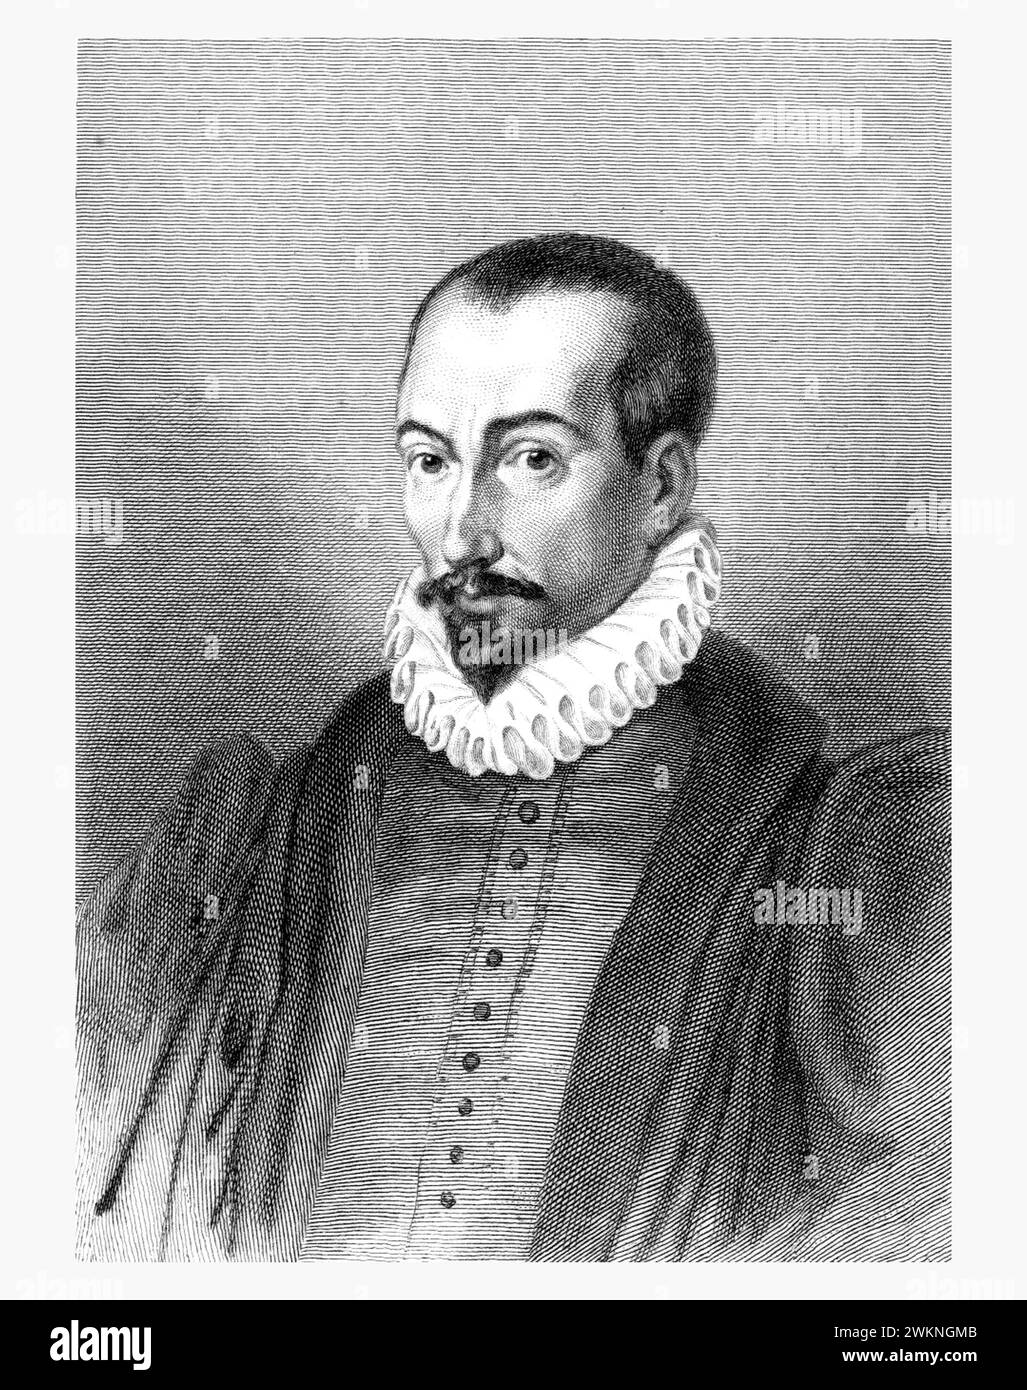 1585 c. , FRANKREICH : der italienische Jurist , Historiker und Schriftsteller PIERRE PITHOU ( 1539–1596 ). Porträt von Gavard , veröffentlicht 1839 . - GESCHICHTE - FOTO STORICHE - HISTORIAN - STORICO - SCRITTORE - WRITER - LETTERATURA - LITERATUR - giureconsulto - GIURISTA - LEGGE - LAY - nobili - nobiltà francese - französischer Adel - FRANCIA - INCISIONE - GRAVUR - ILLUSTRATION - ILLUSTRAZIONE - Kragen - Collare - Colletto - GORGIERA - pizzo - Spitze - Bart - barba -- Archivio GBB Stockfoto